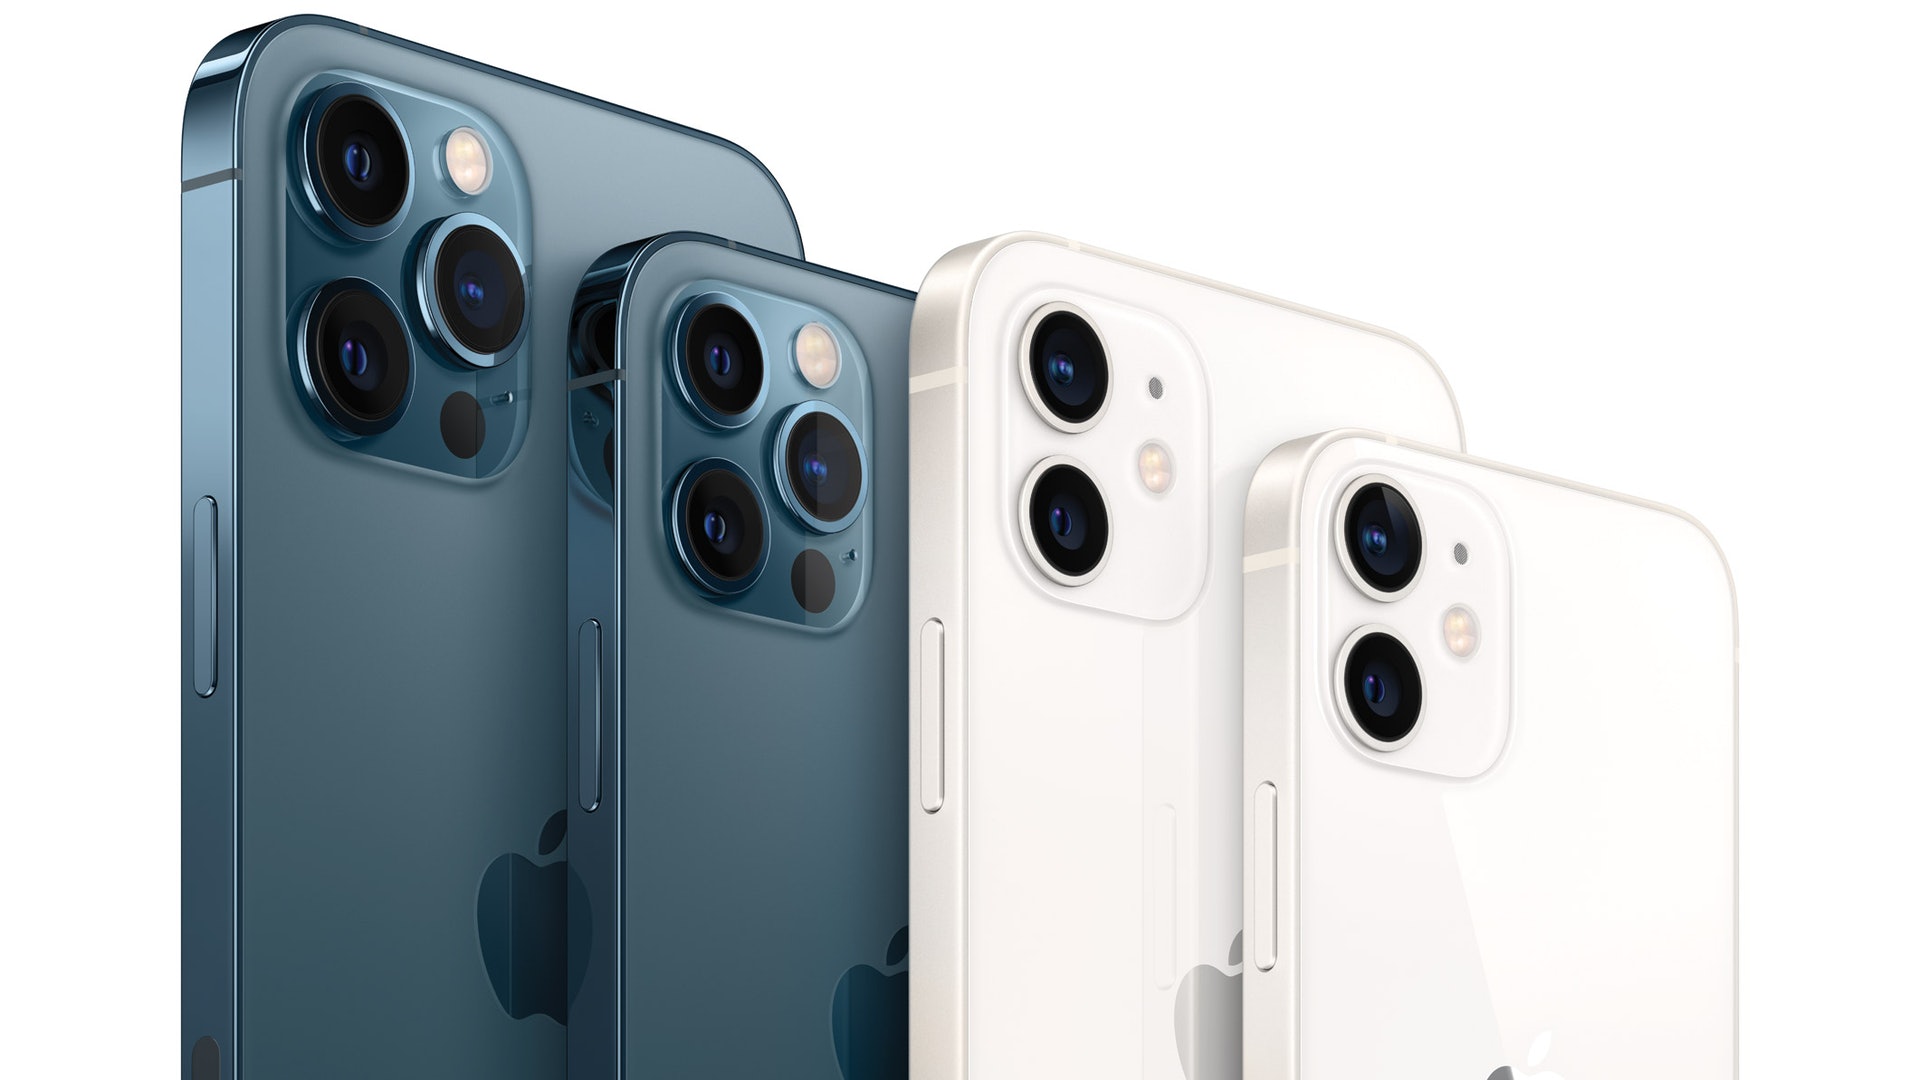 iPhone12 Mini、Pro、Pro Max 一表快速比較體積設計相機規格